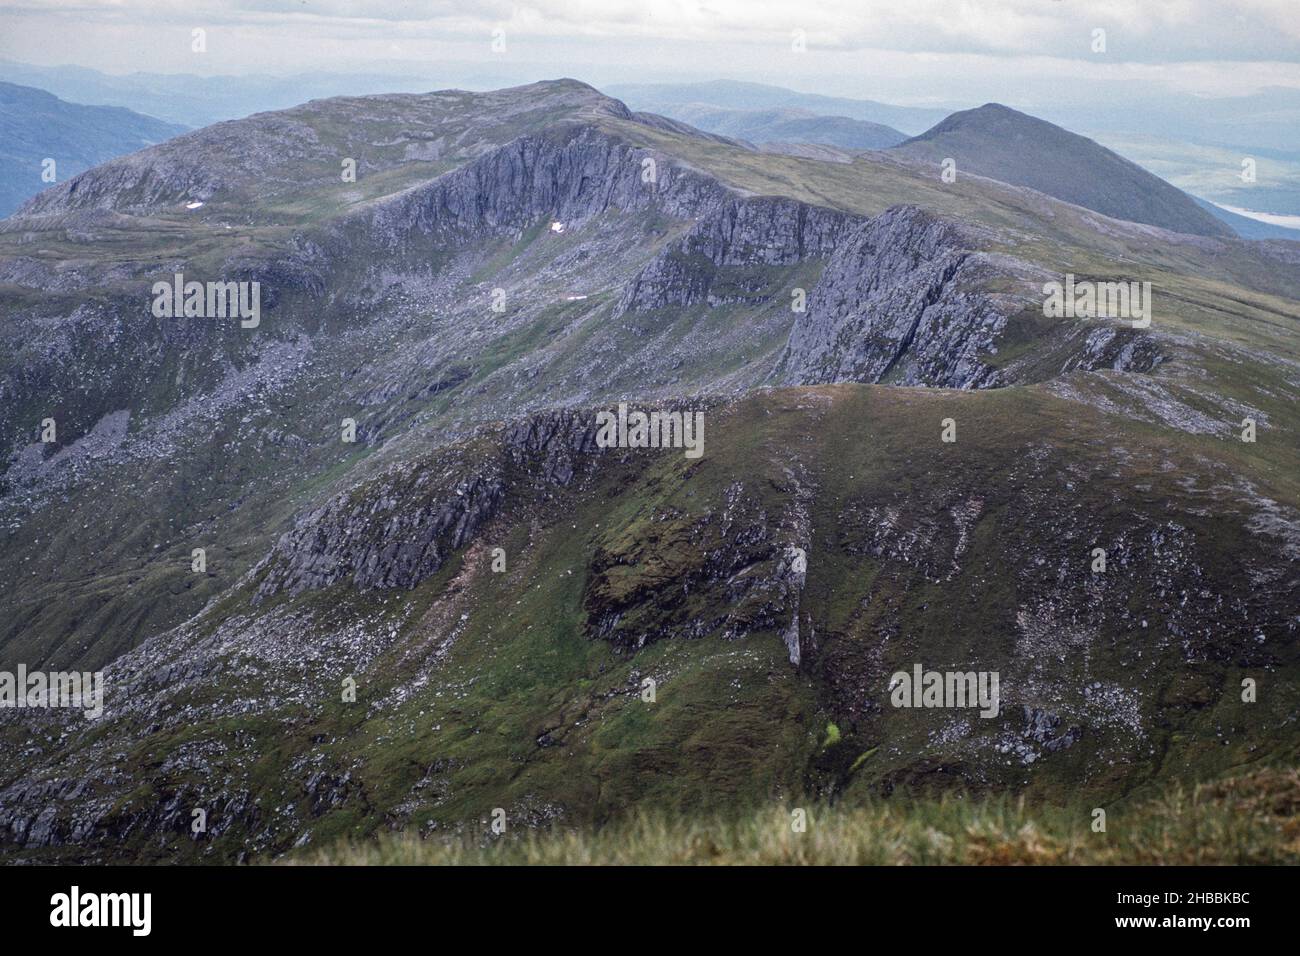 Archivbild, 1991: Schottische Highlands Landschaft mit Bergen und Corries. Gescannt aus 35mm-Transparentfolien Stockfoto